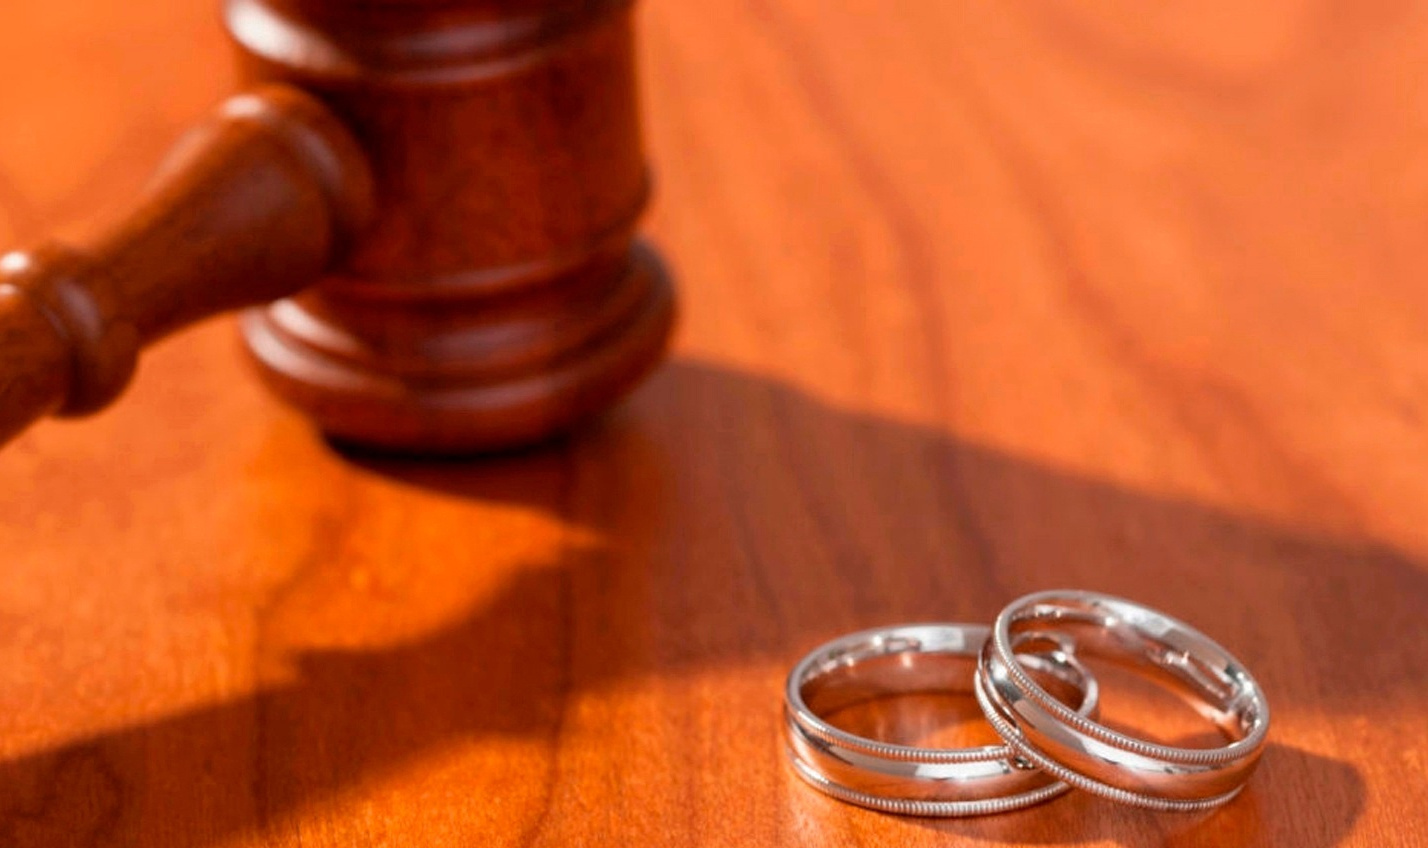 Фиктивный брак: жительница Брянской области расписалась с азербайджанцем за 30 тысяч рублей